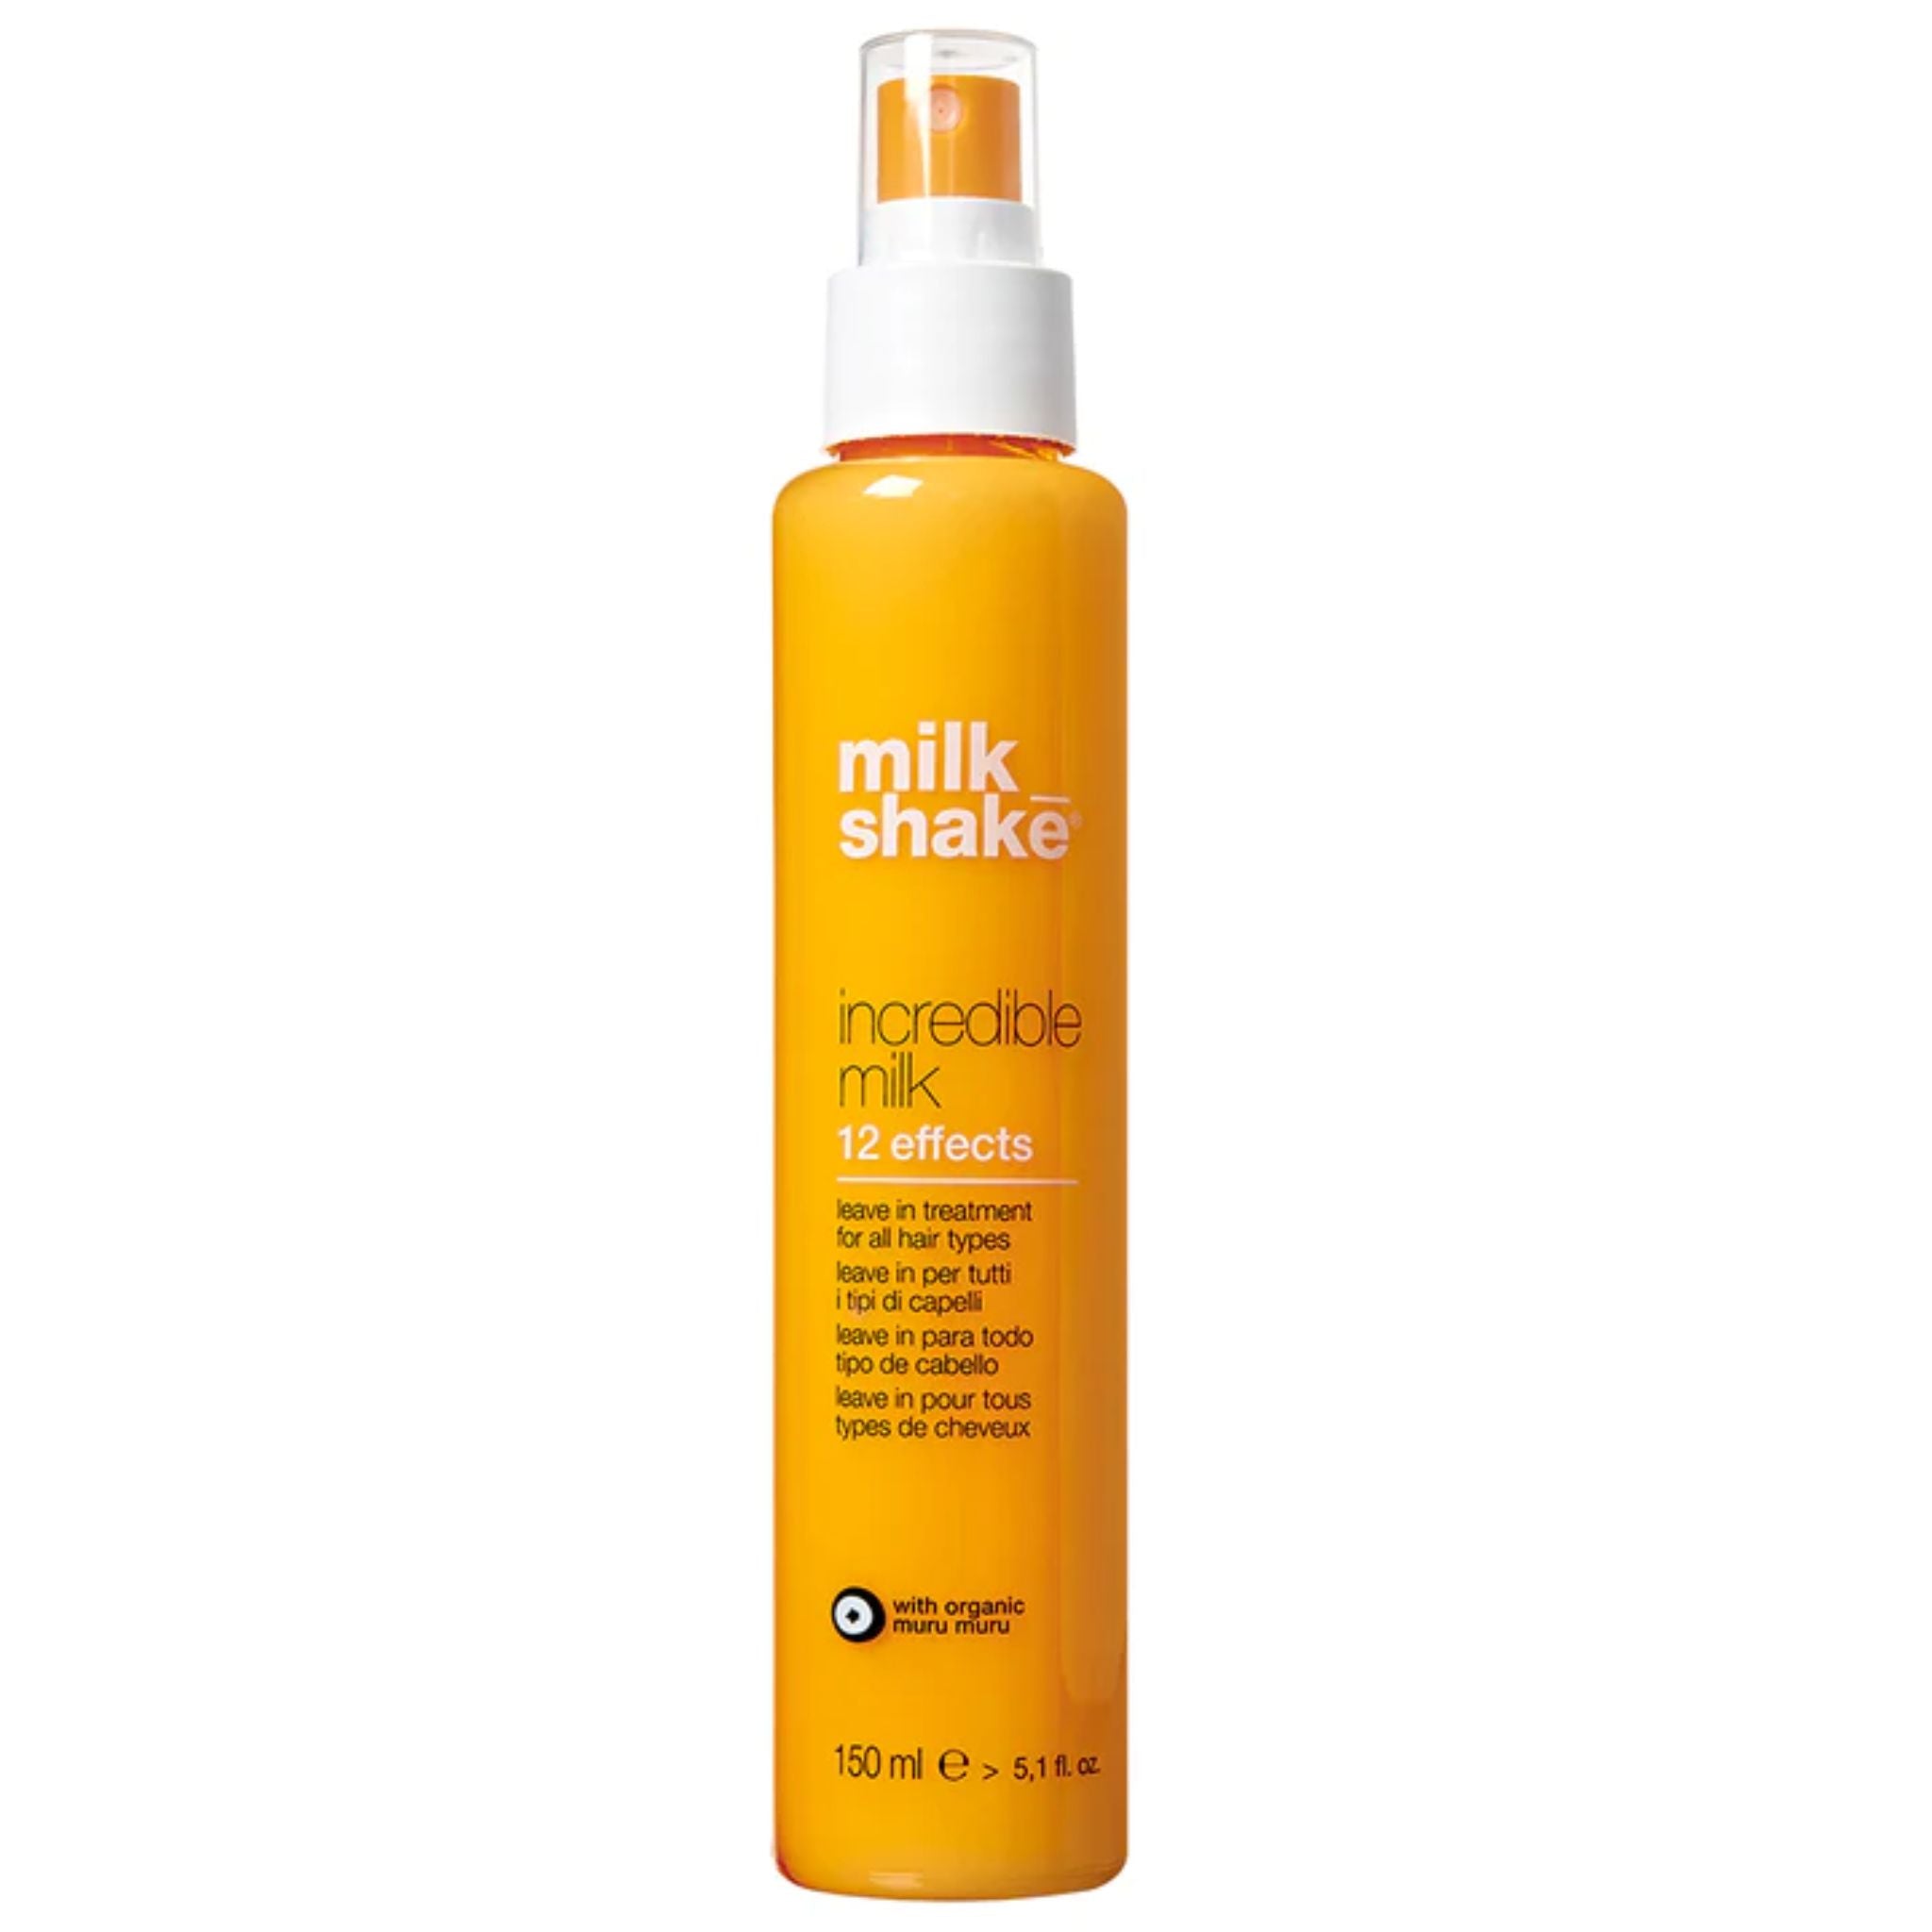 Milkshake - Incredible Milk 150ml